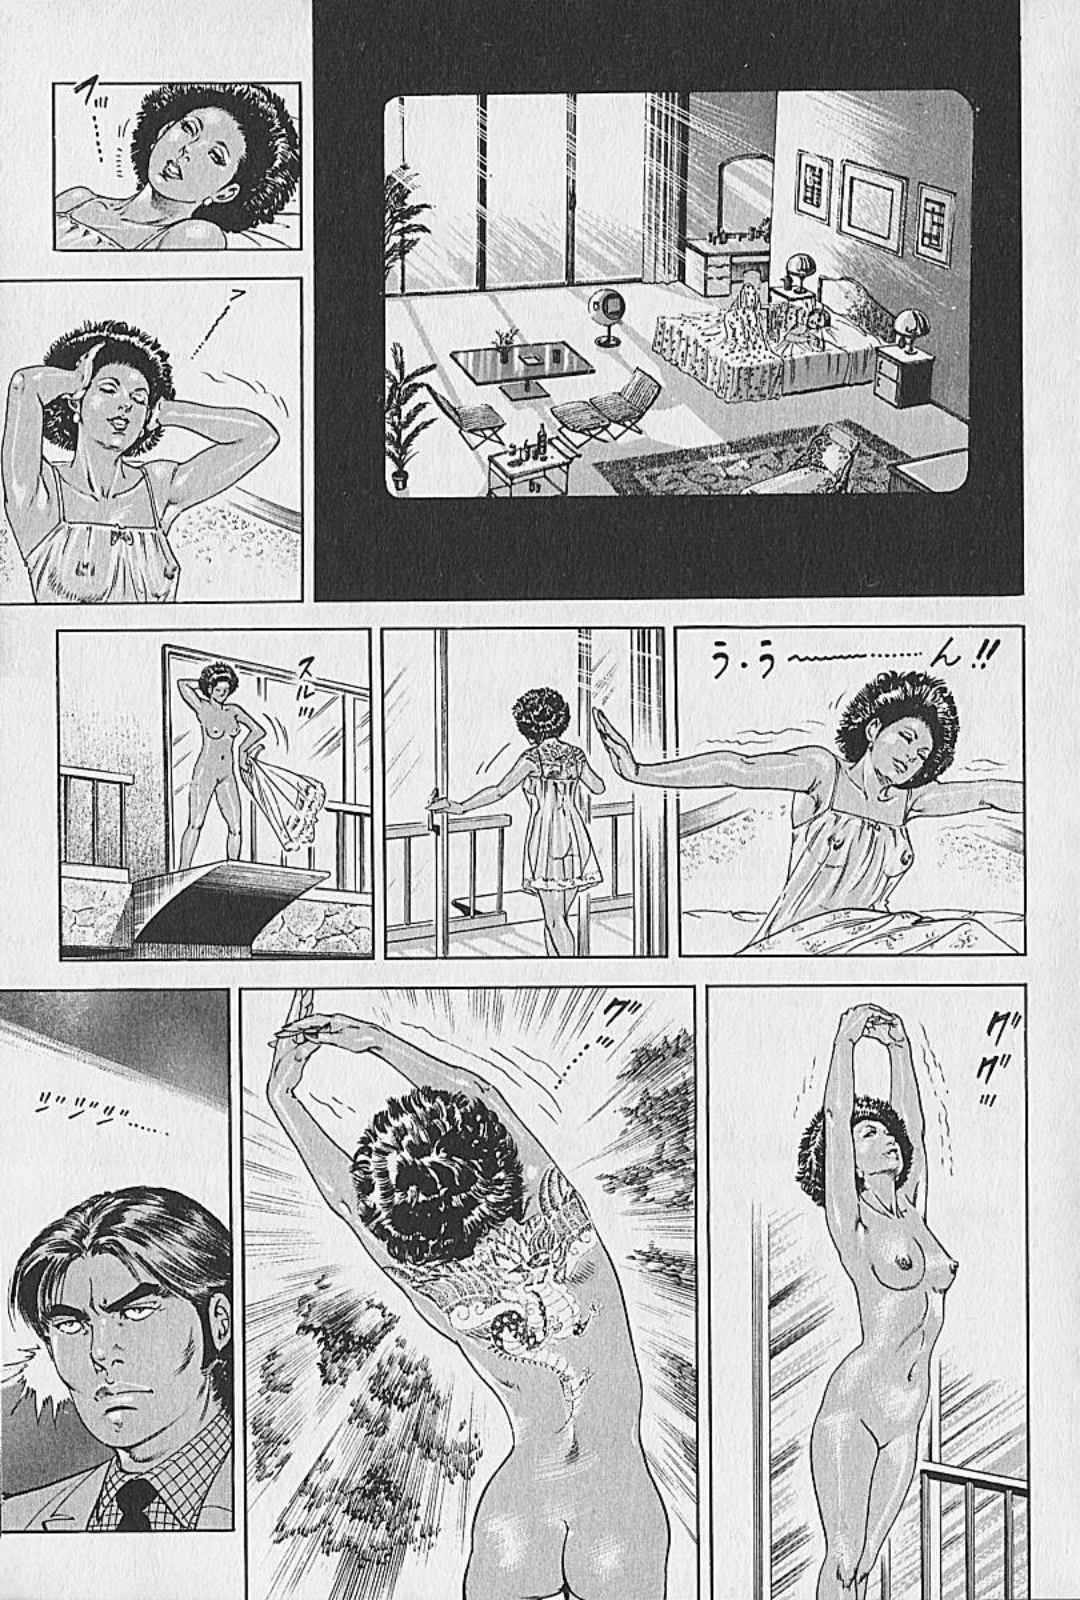 [Kano Seisaku, Koike Kazuo] Jikken Ningyou Dummy Oscar Vol.12 [叶精作, 小池一夫] 実験人形ダミー・オスカー 第12巻